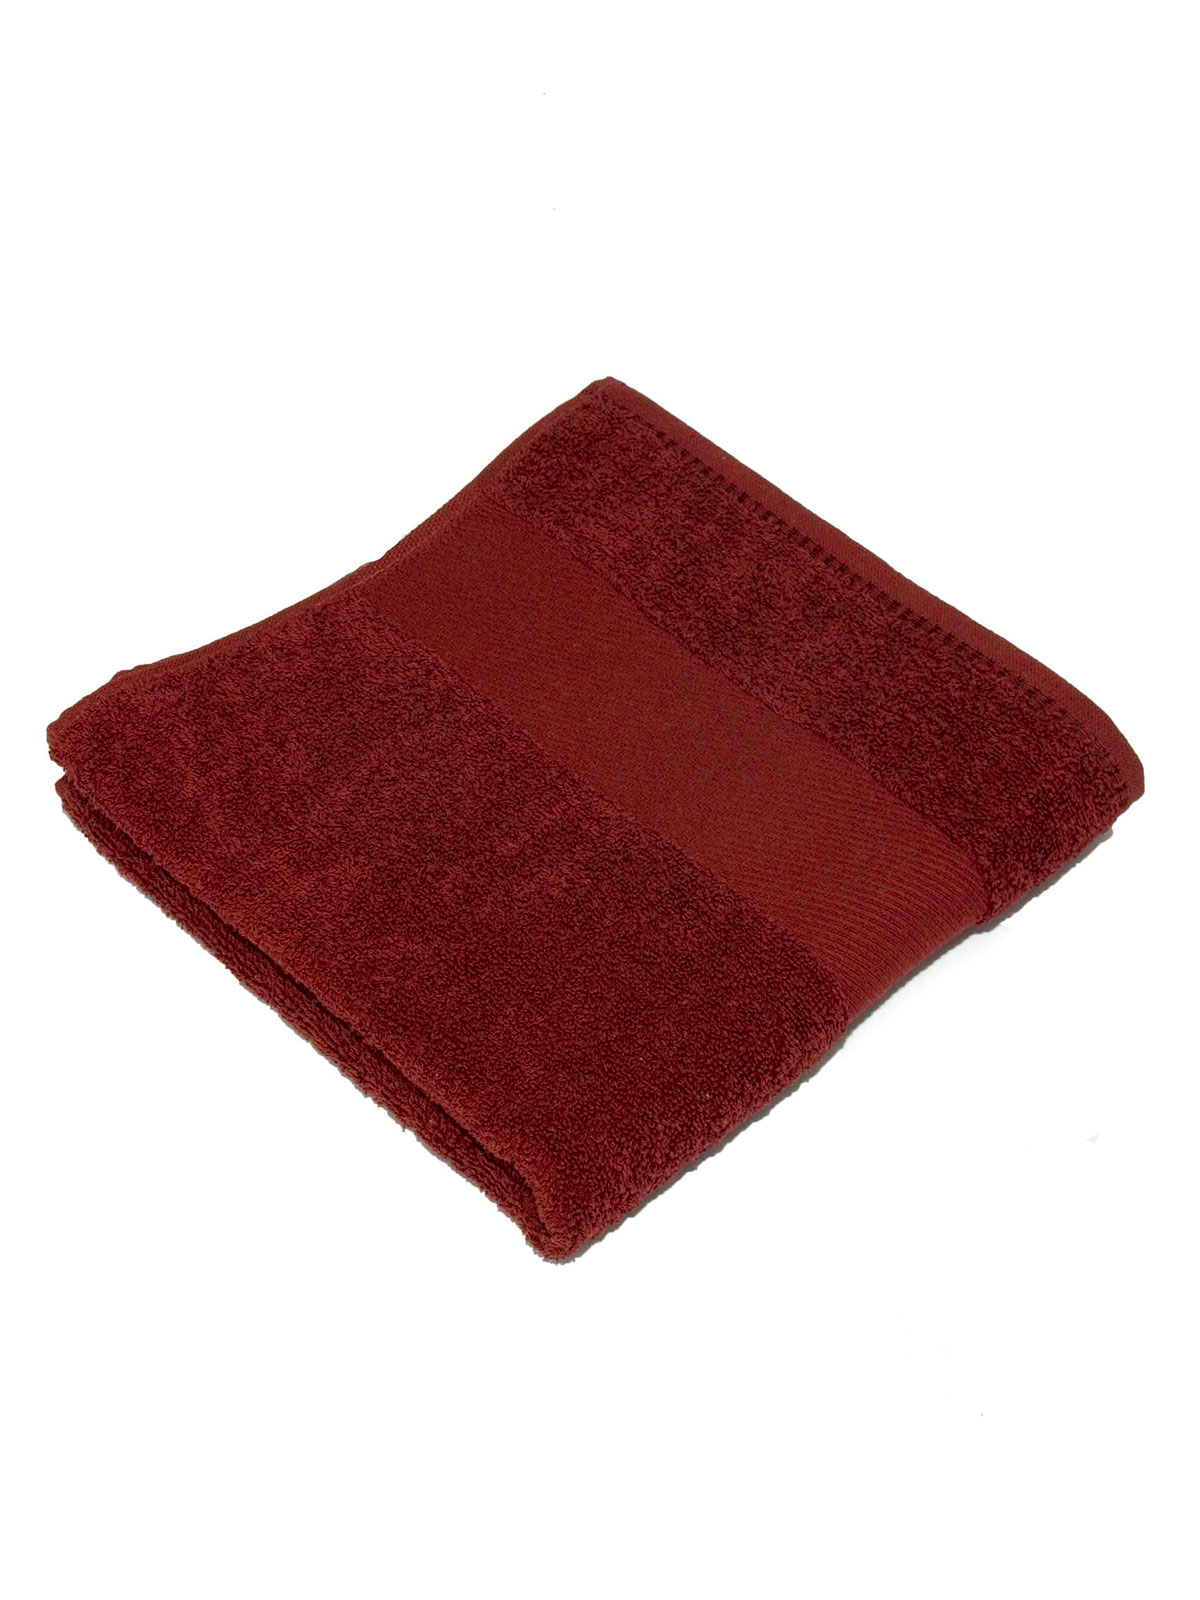 classic-towel-100x160-bordeaux.webp